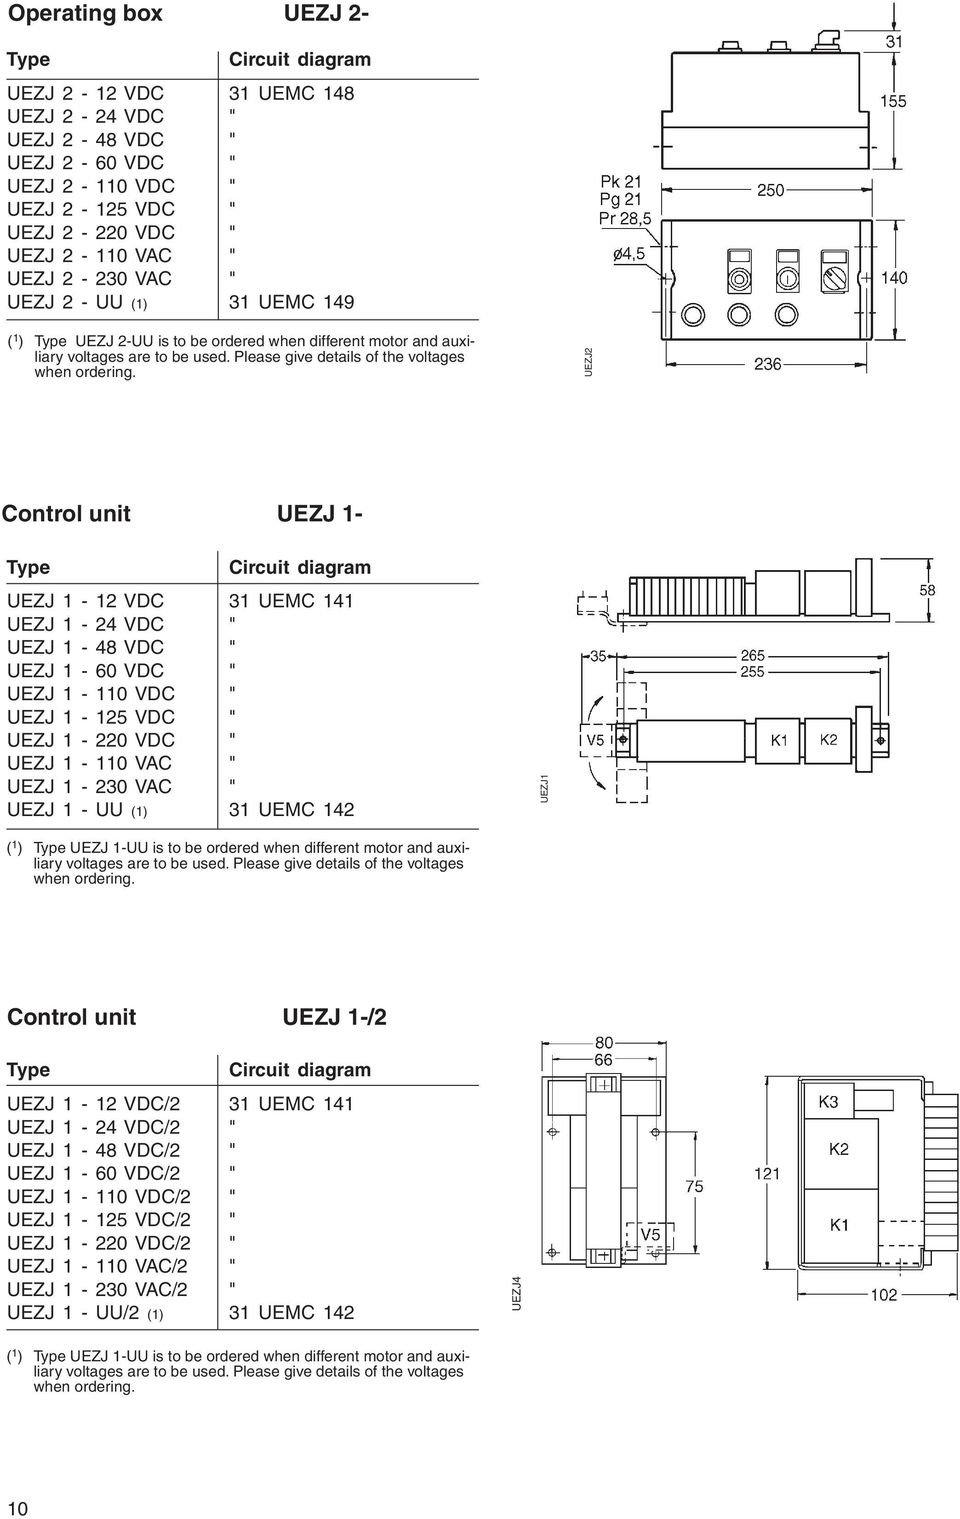 UEZJ2 Control unit UEZJ 1- Type Circuit diagram UEZJ 1-12 VDC 31 UEMC 141 UEZJ 1-24 VDC " UEZJ 1-48 VDC " UEZJ 1-60 VDC " UEZJ 1-110 VDC " UEZJ 1-125 VDC " UEZJ 1-220 VDC " UEZJ 1-110 VAC " UEZJ